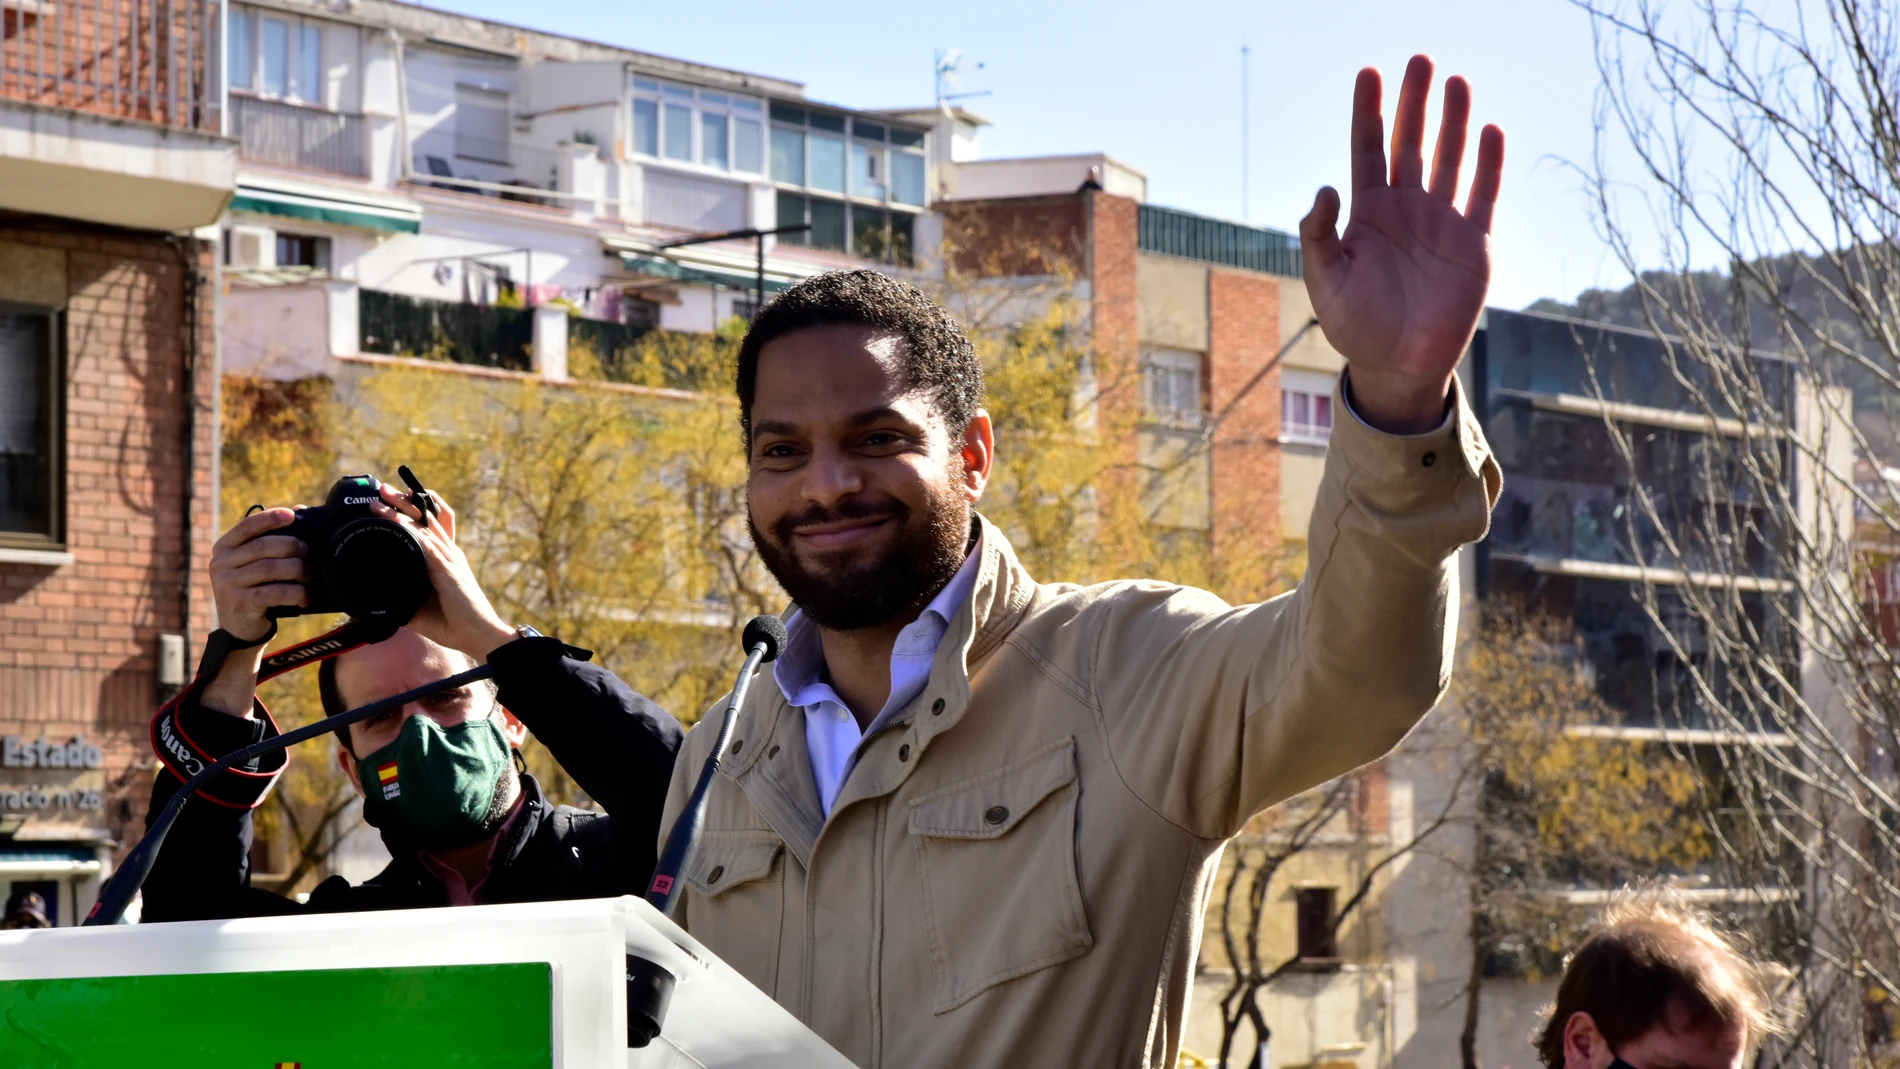 El candidato de VOX a la presidencia de la Generalitat, Ignacio Garriga saluda antes de su intervención en una campaña electoral en Barcelona